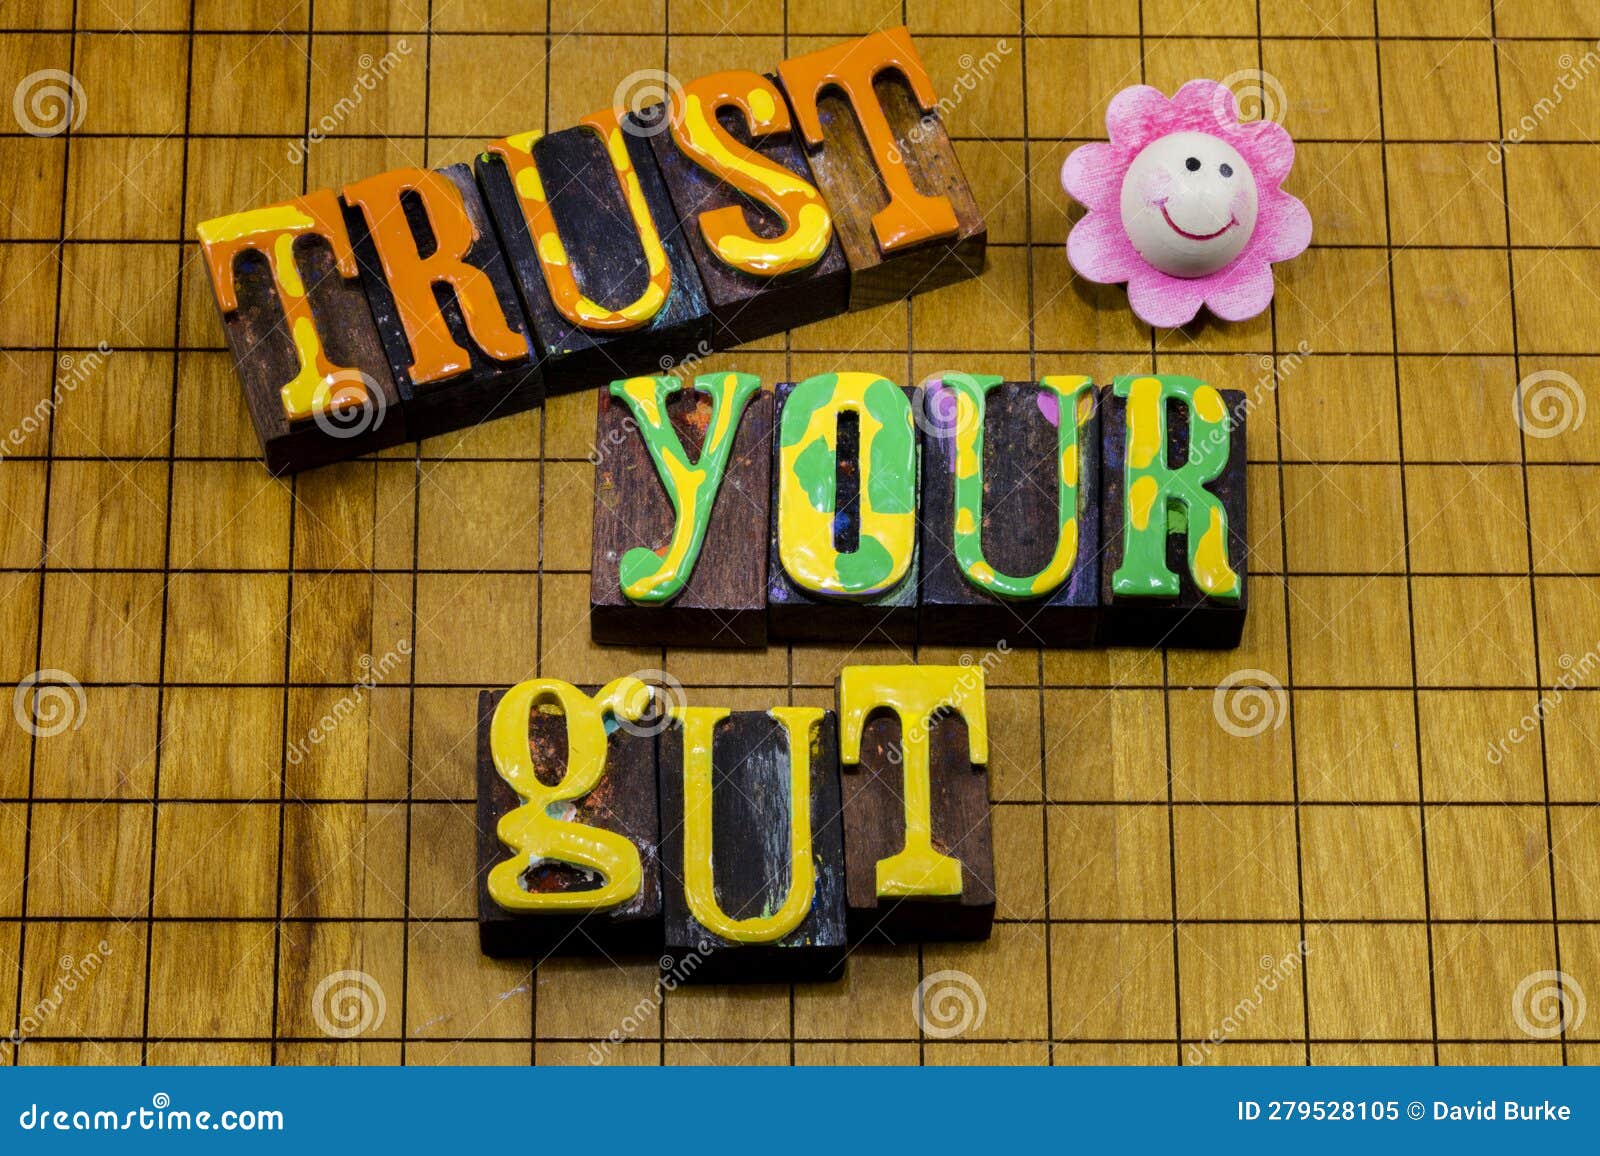 trust gut instinct feelings emotion confidence wisdom believe yourself